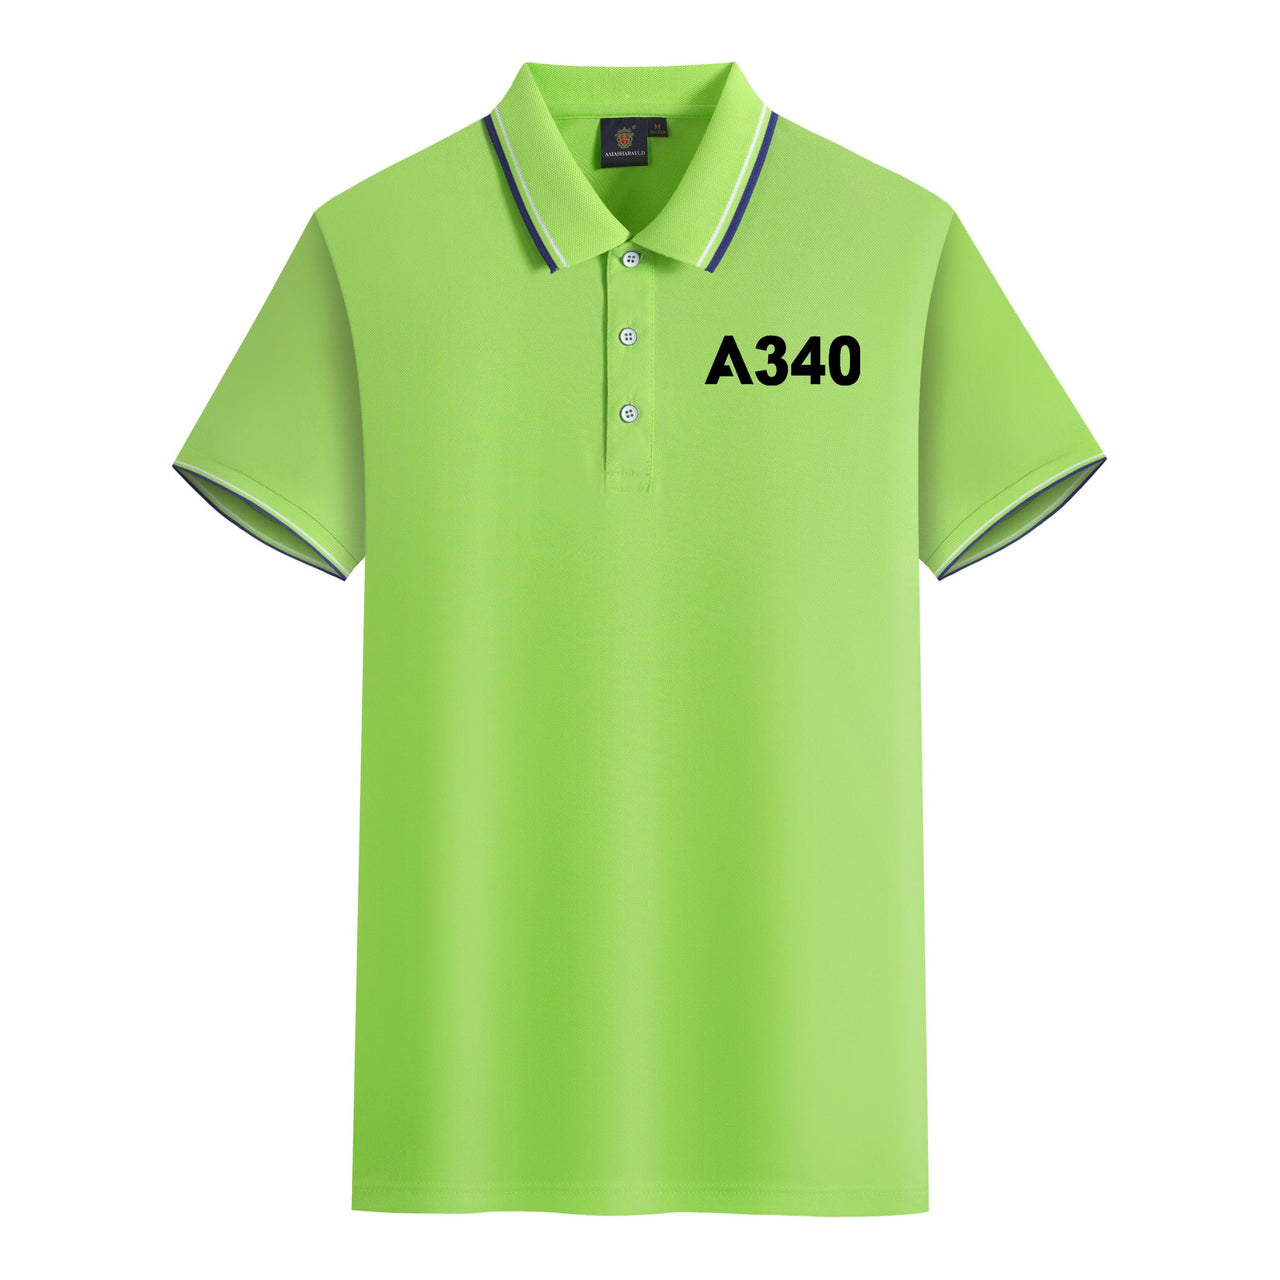 A340 Flat Text Designed Stylish Polo T-Shirts